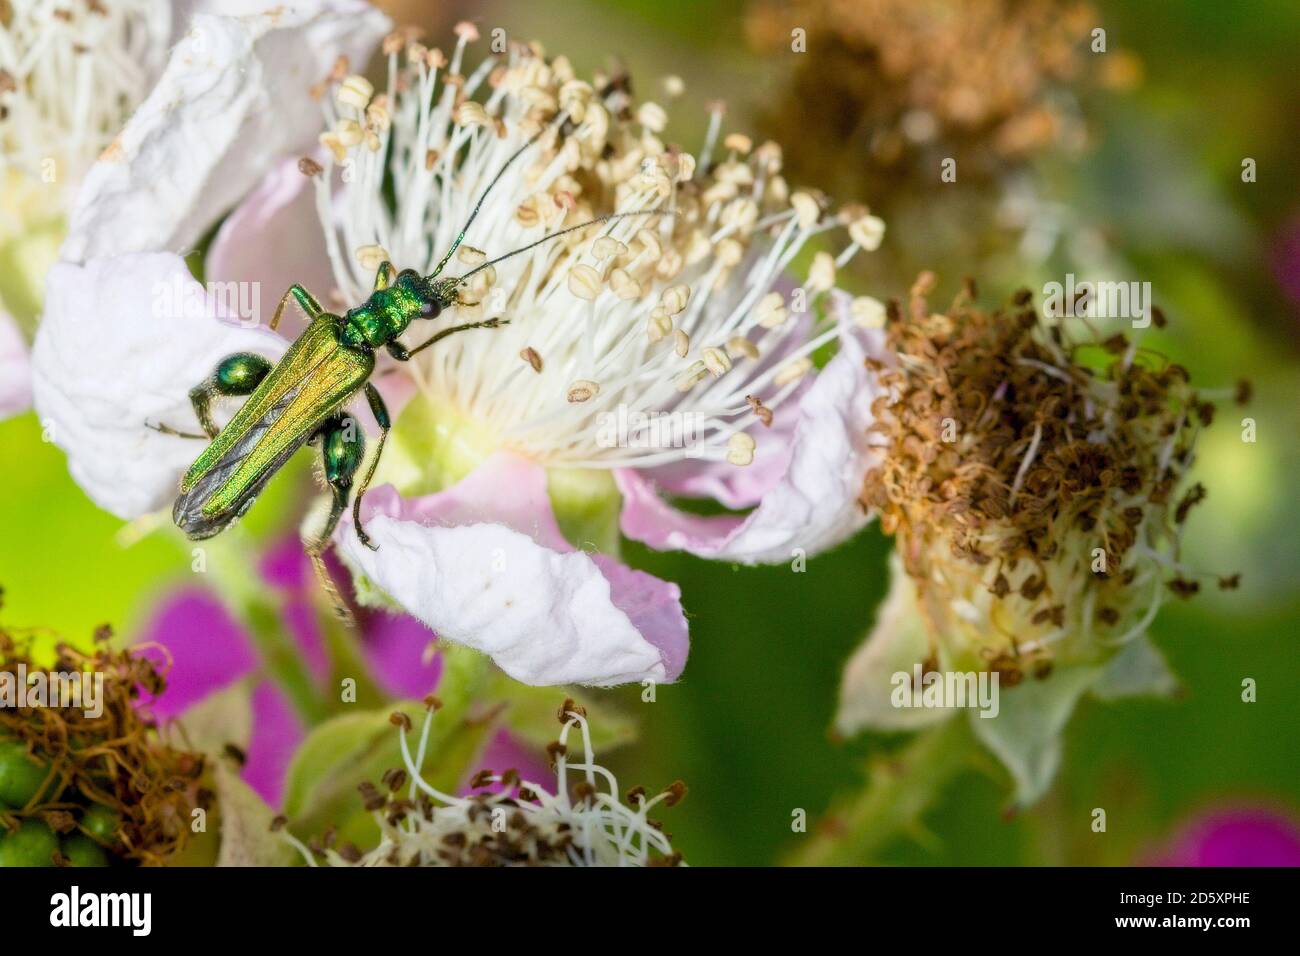 Oedemera nobilis, (también conocido como el escarabajo de aceite falso, escarabajo de flores de patas gruesas o escarabajo hinchado) en las flores de BlackBerry, Cornwall, Inglaterra, Foto de stock